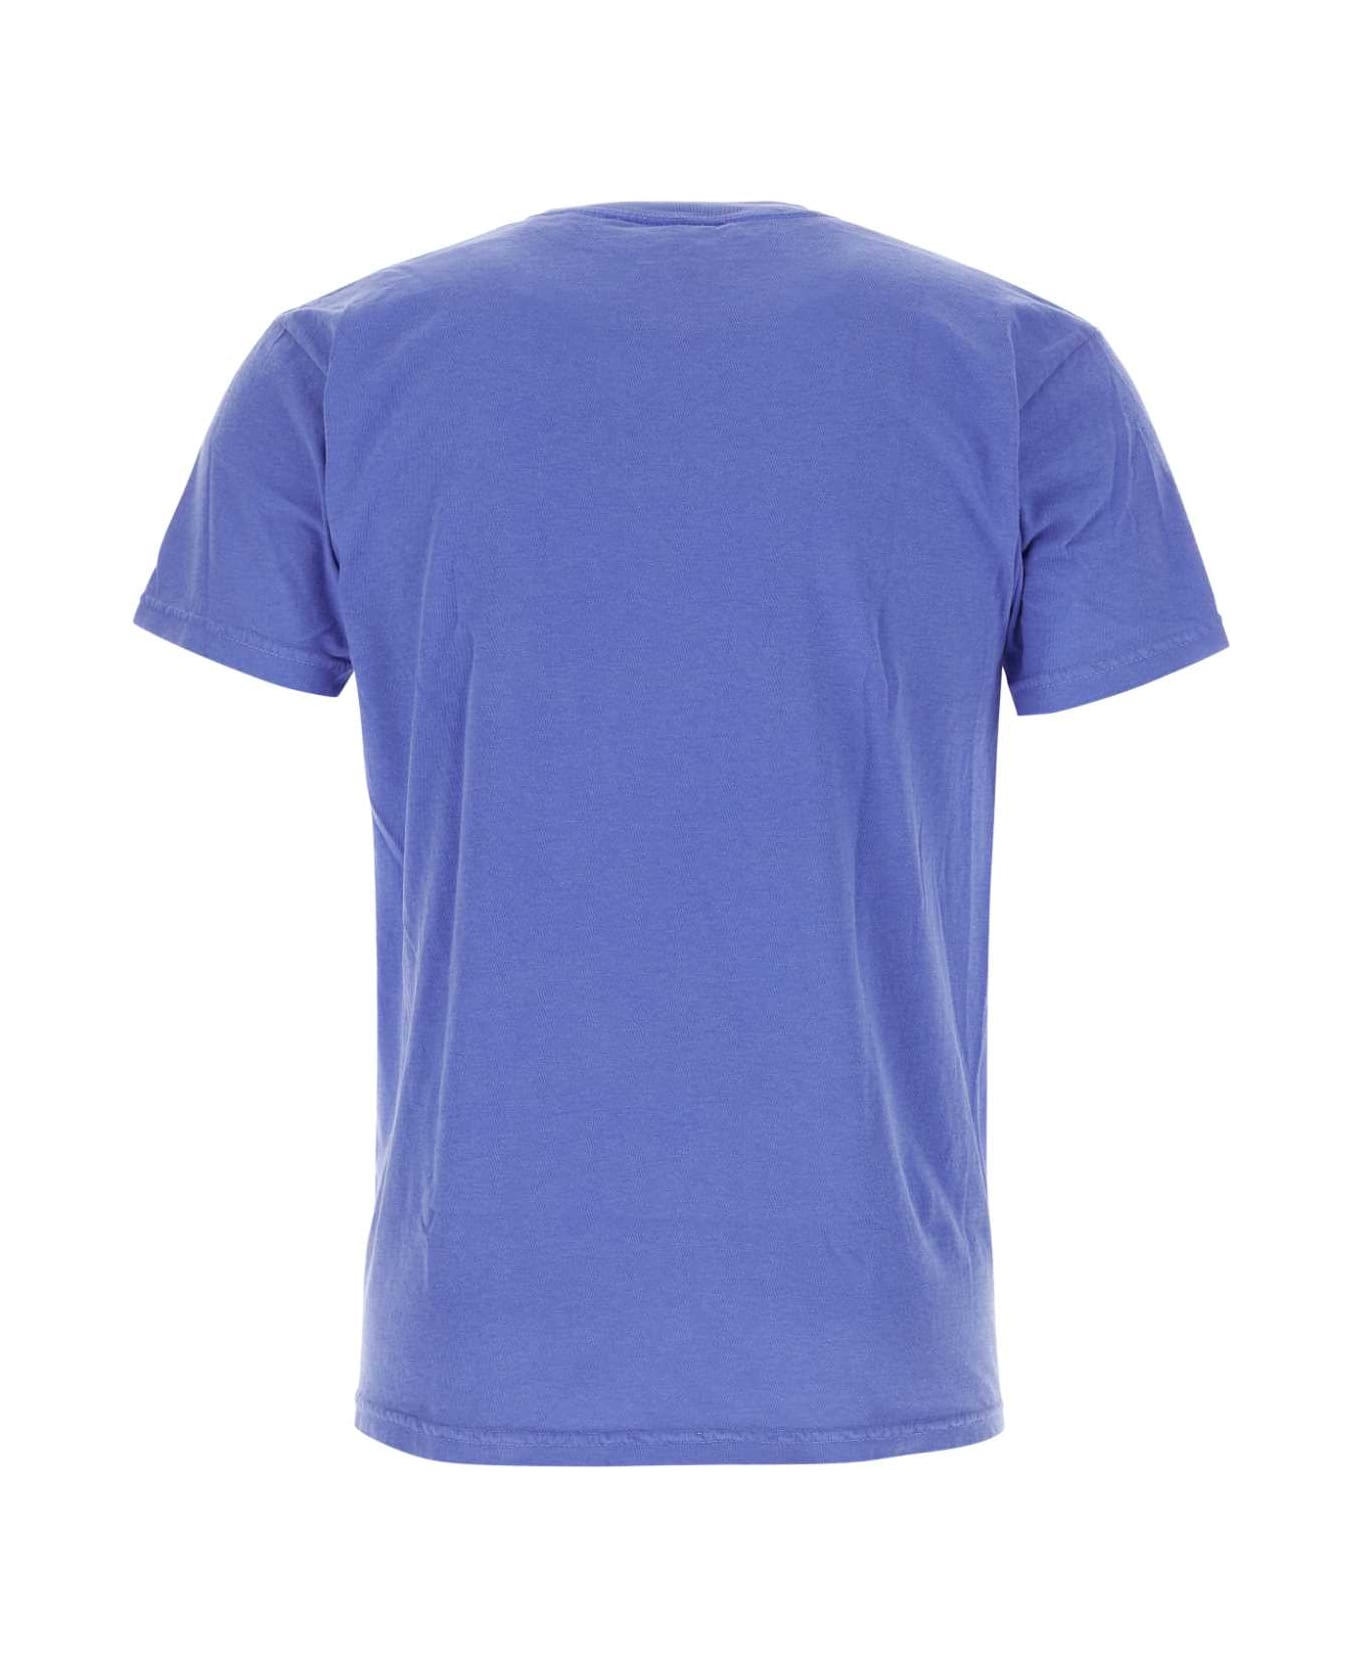 Kidsuper Cerulean Blue Cotton T-shirt - REUNIONLILAC シャツ